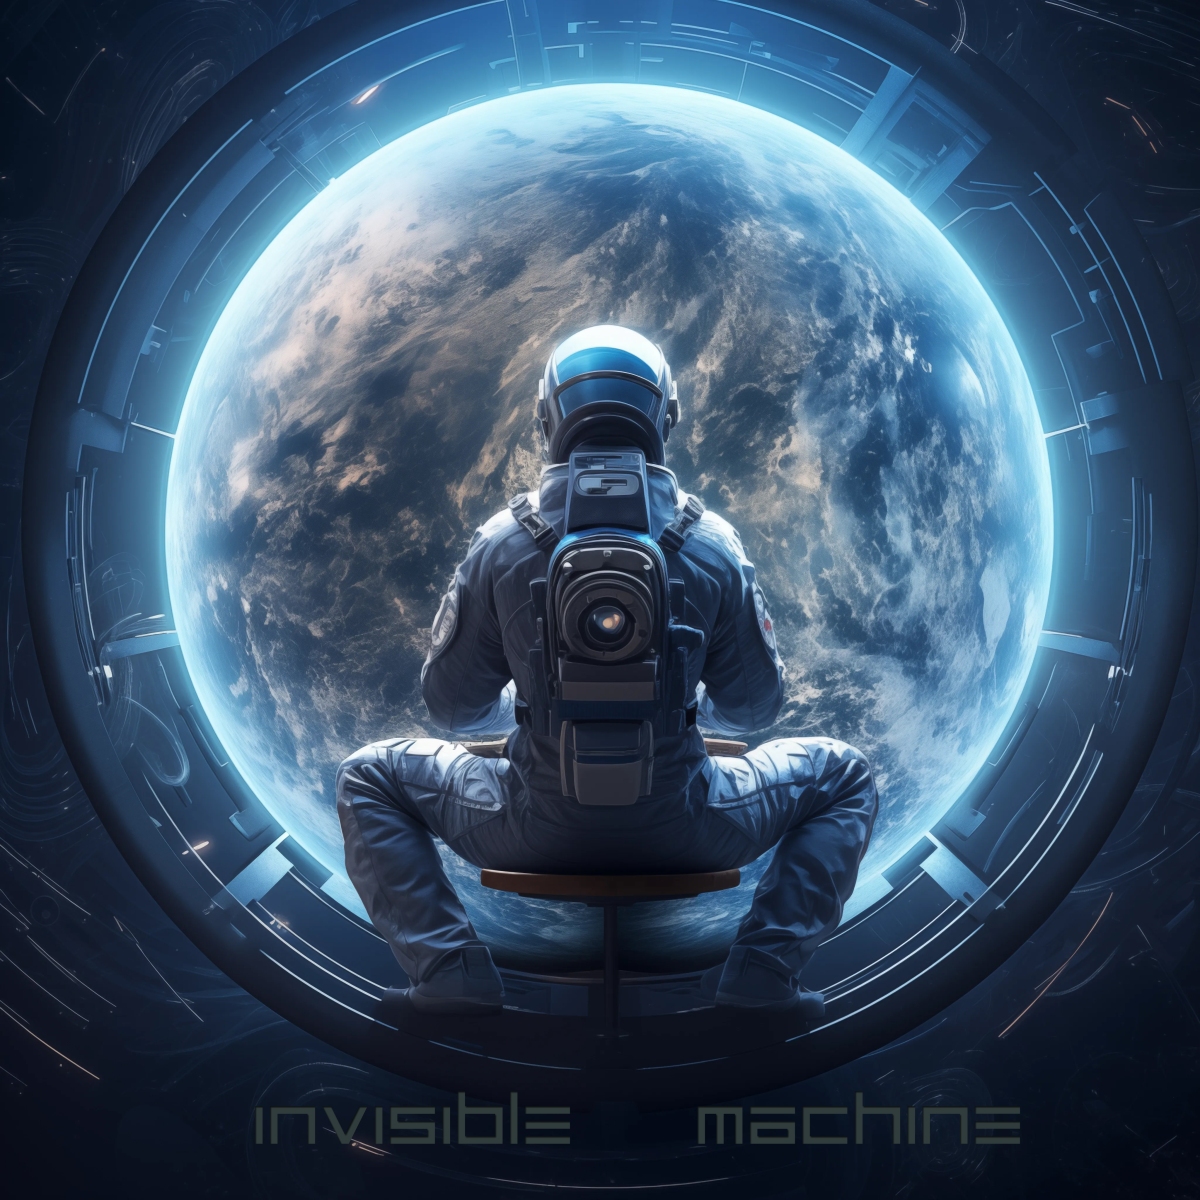 Invisible Machine